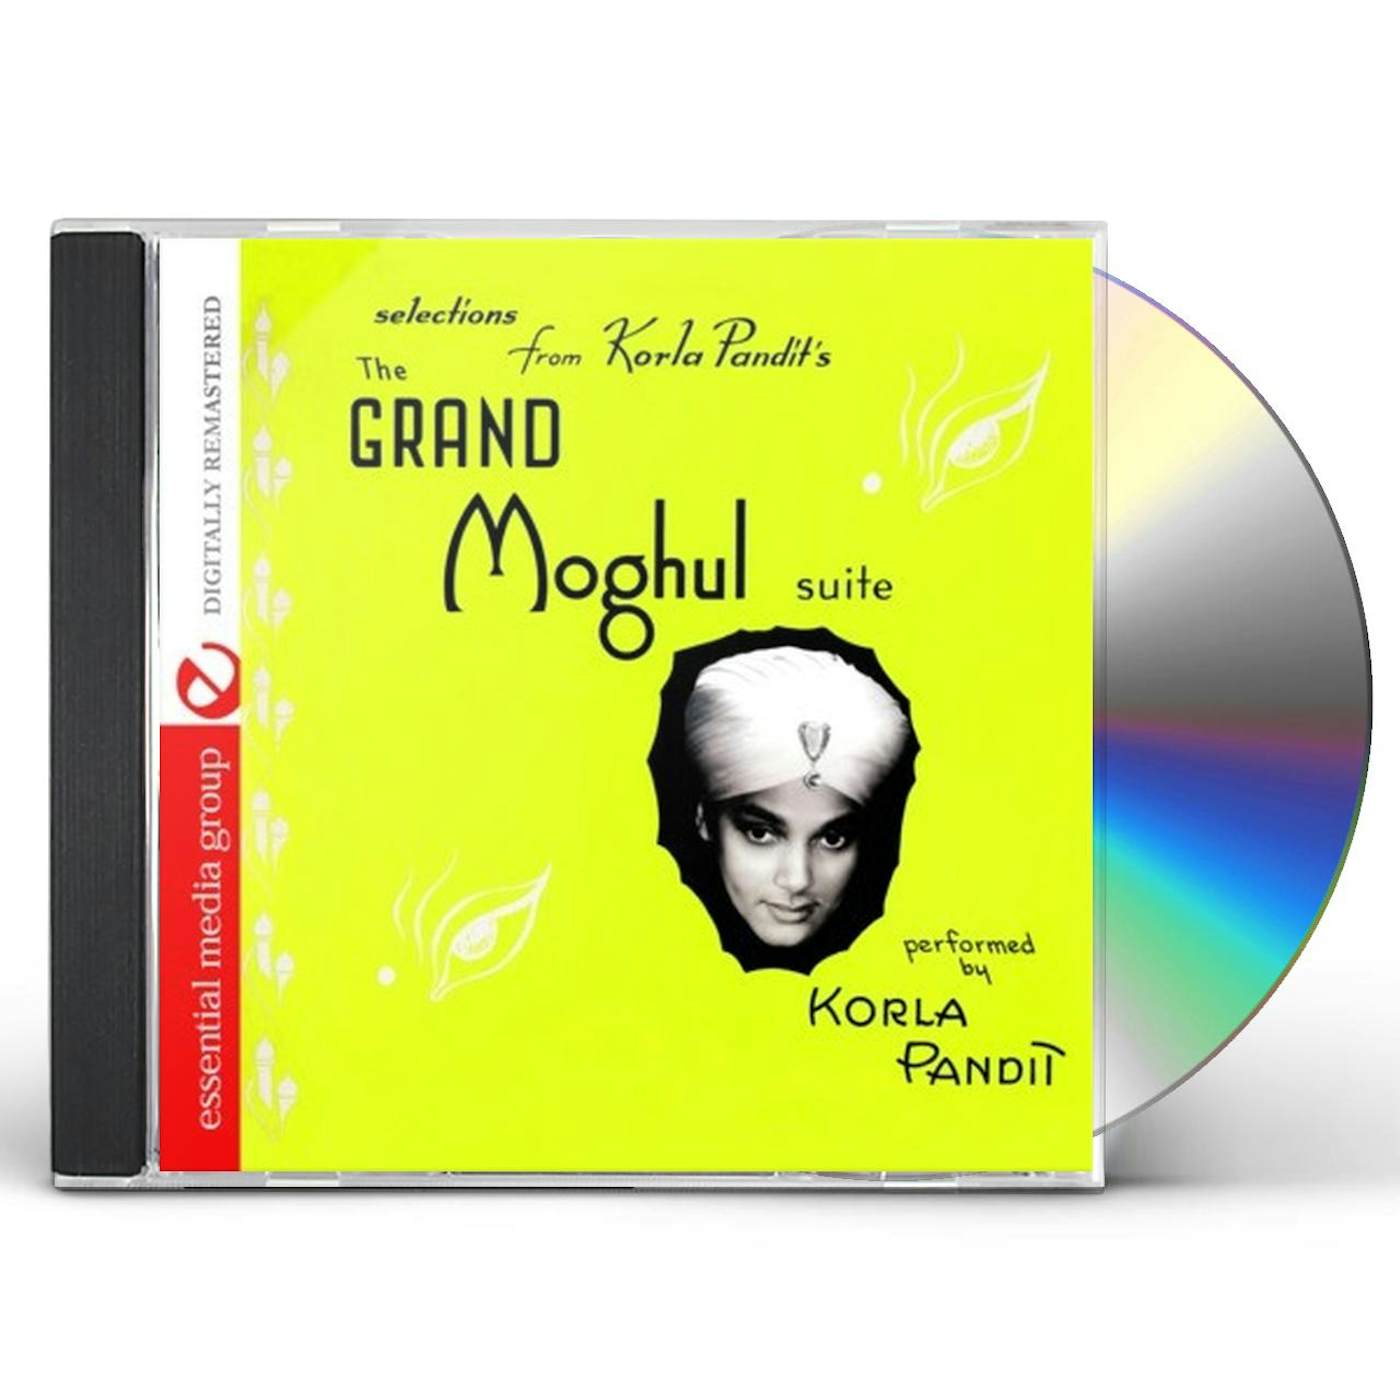 Korla Pandit GRAND MOGHUL SUITE CD